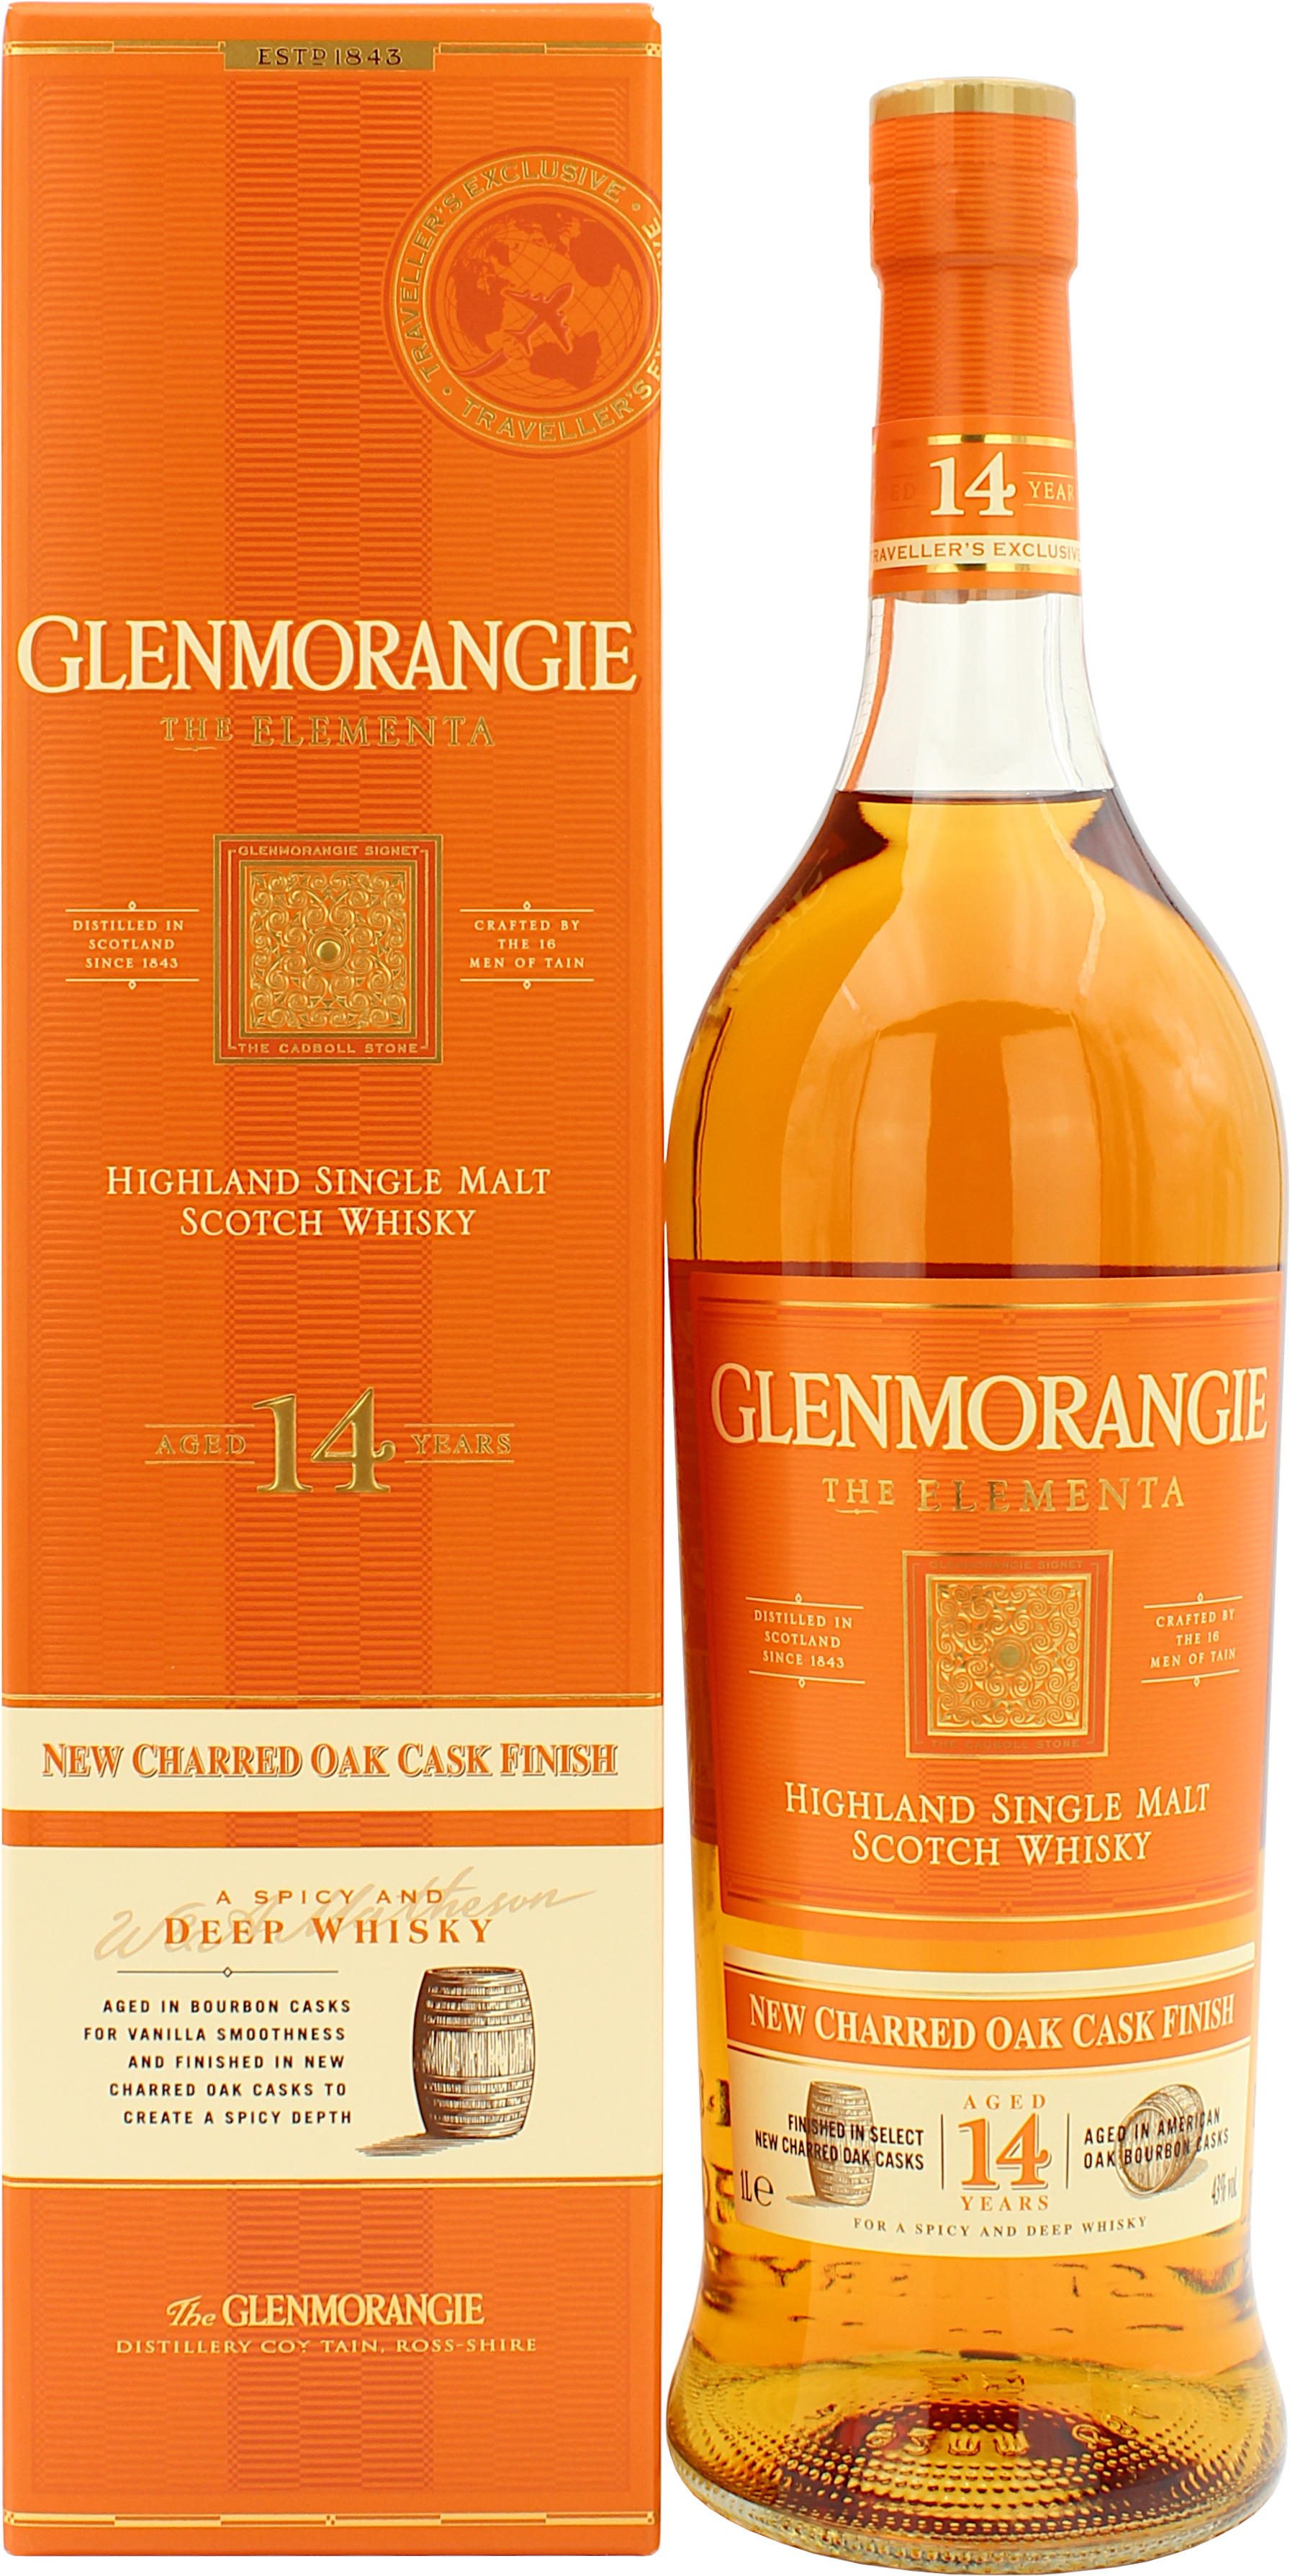 Glenmorangie 14 Jahre The Elementa 43.0% 1 Liter